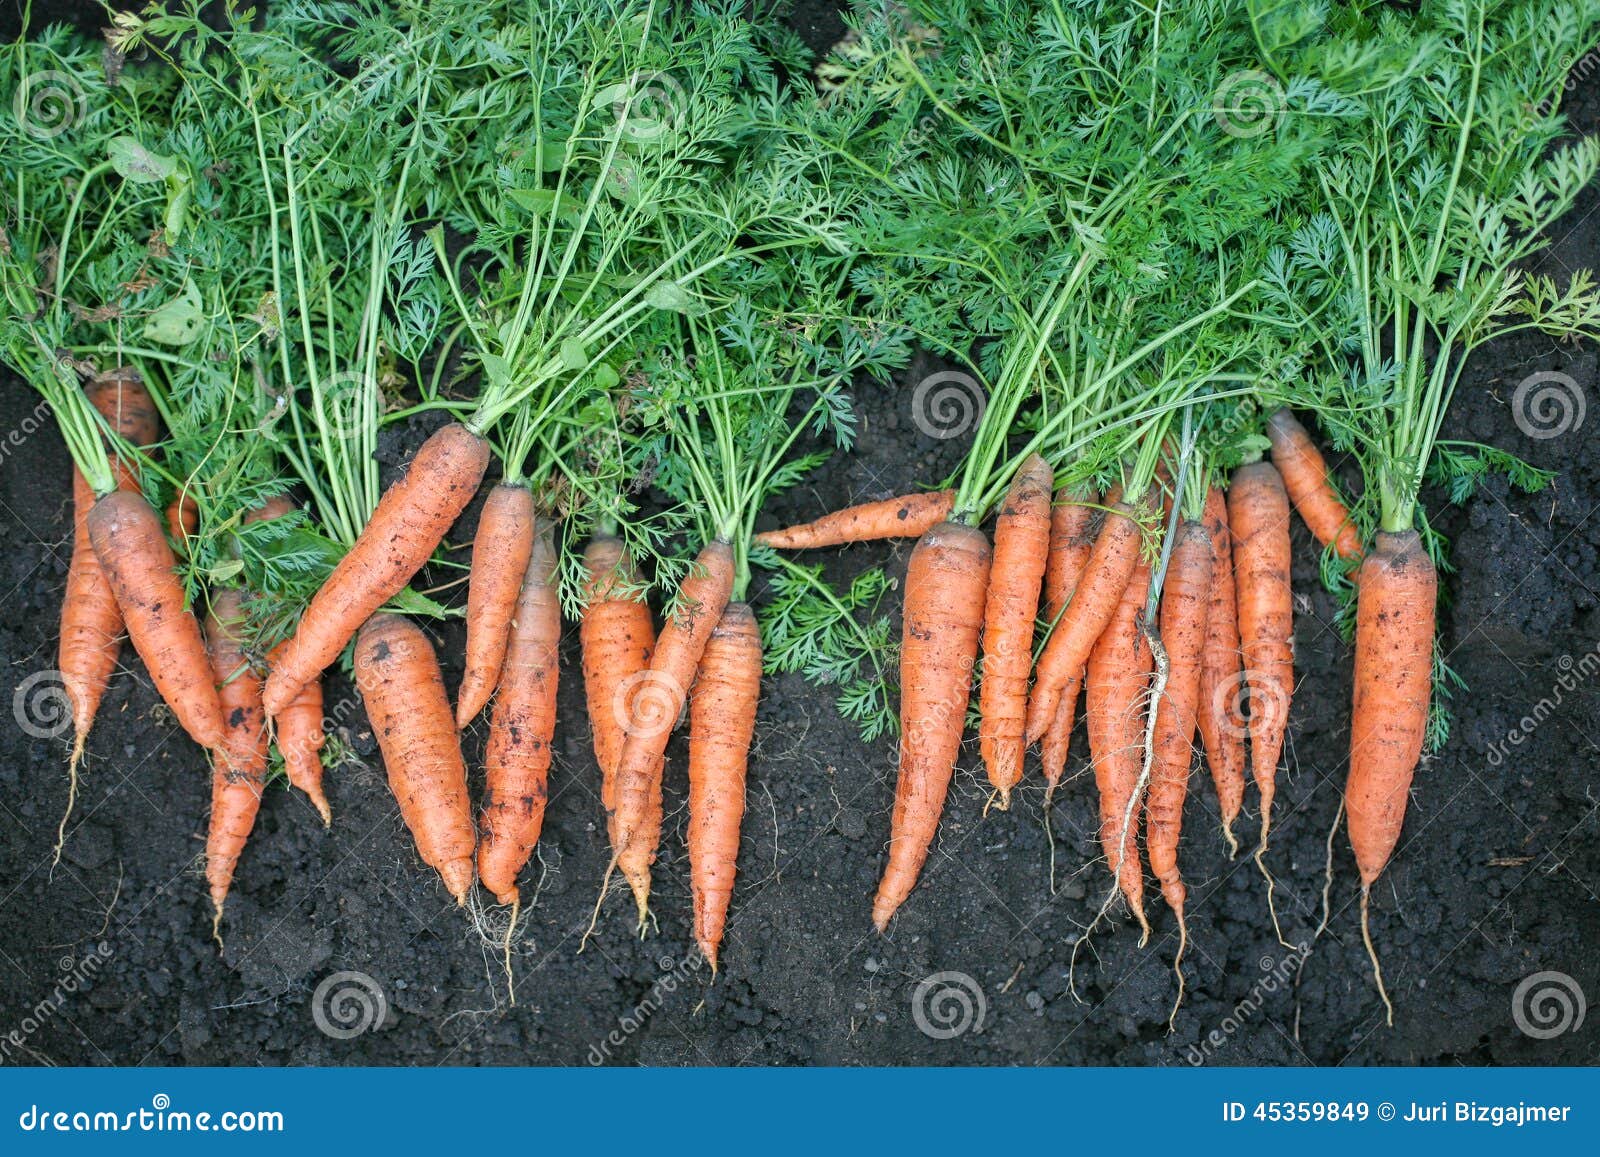 К чему снится морковь свежая